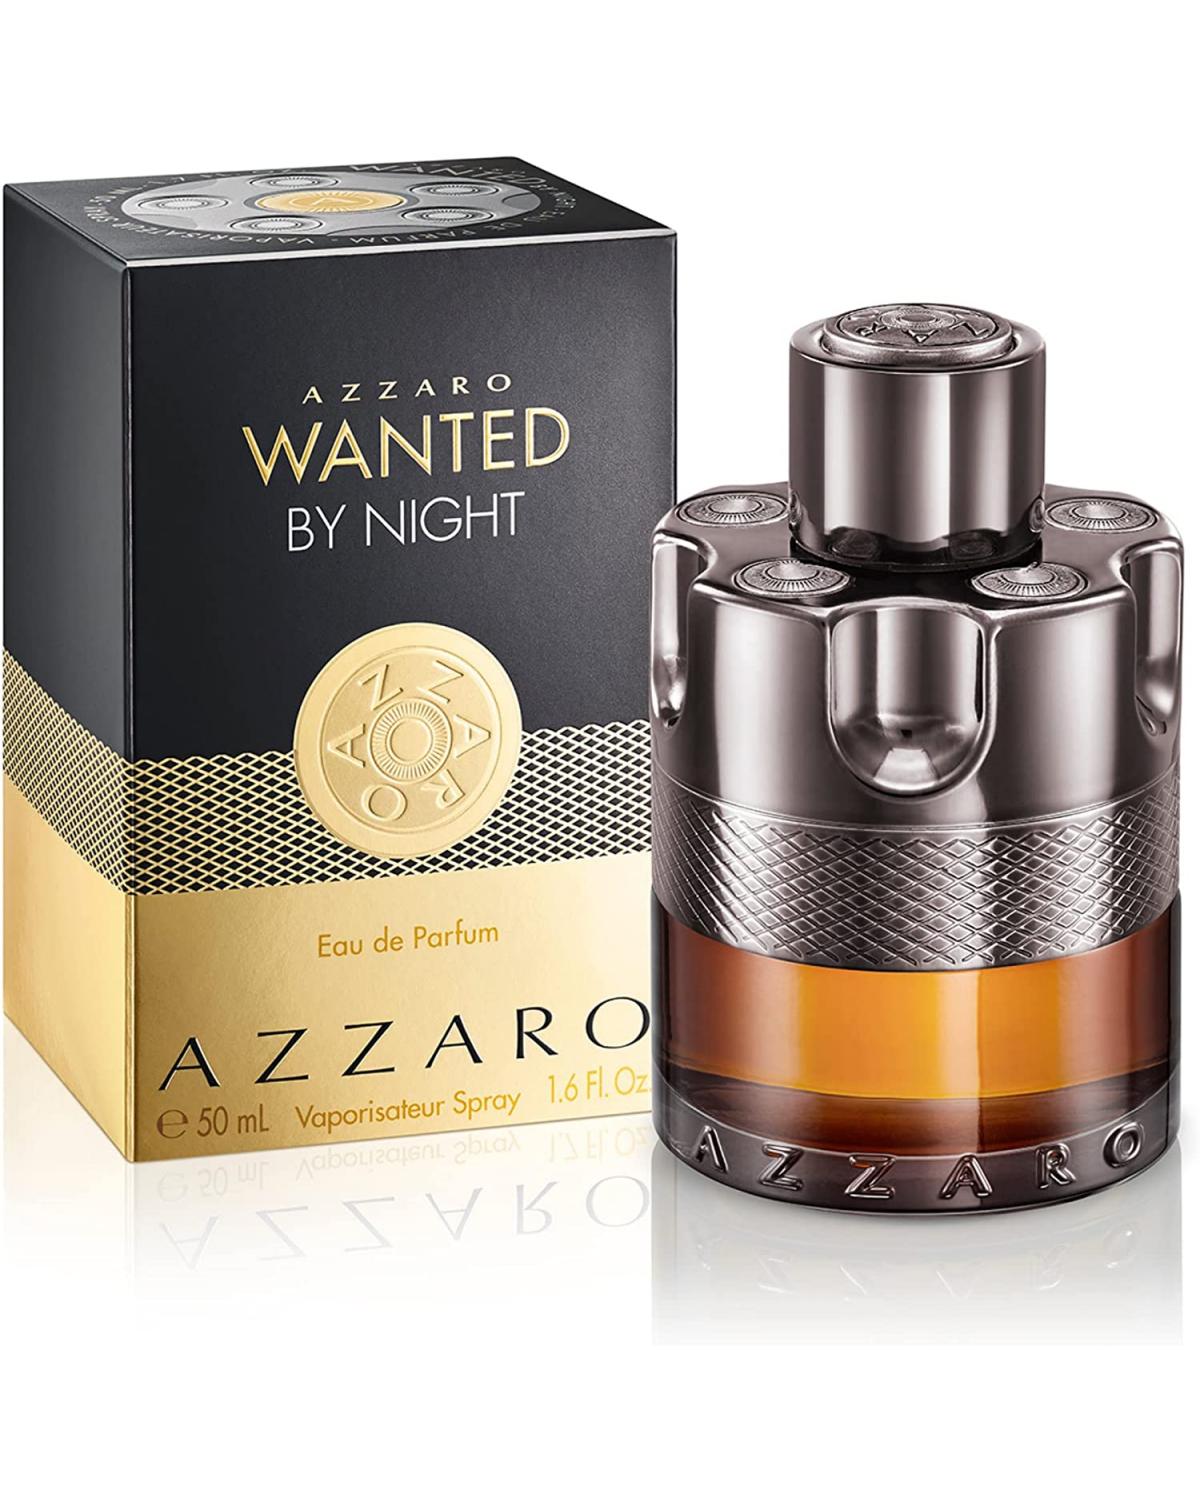 Wanted by Night Azzaro Perfume Masculino - Eau de Parfum - 50ml